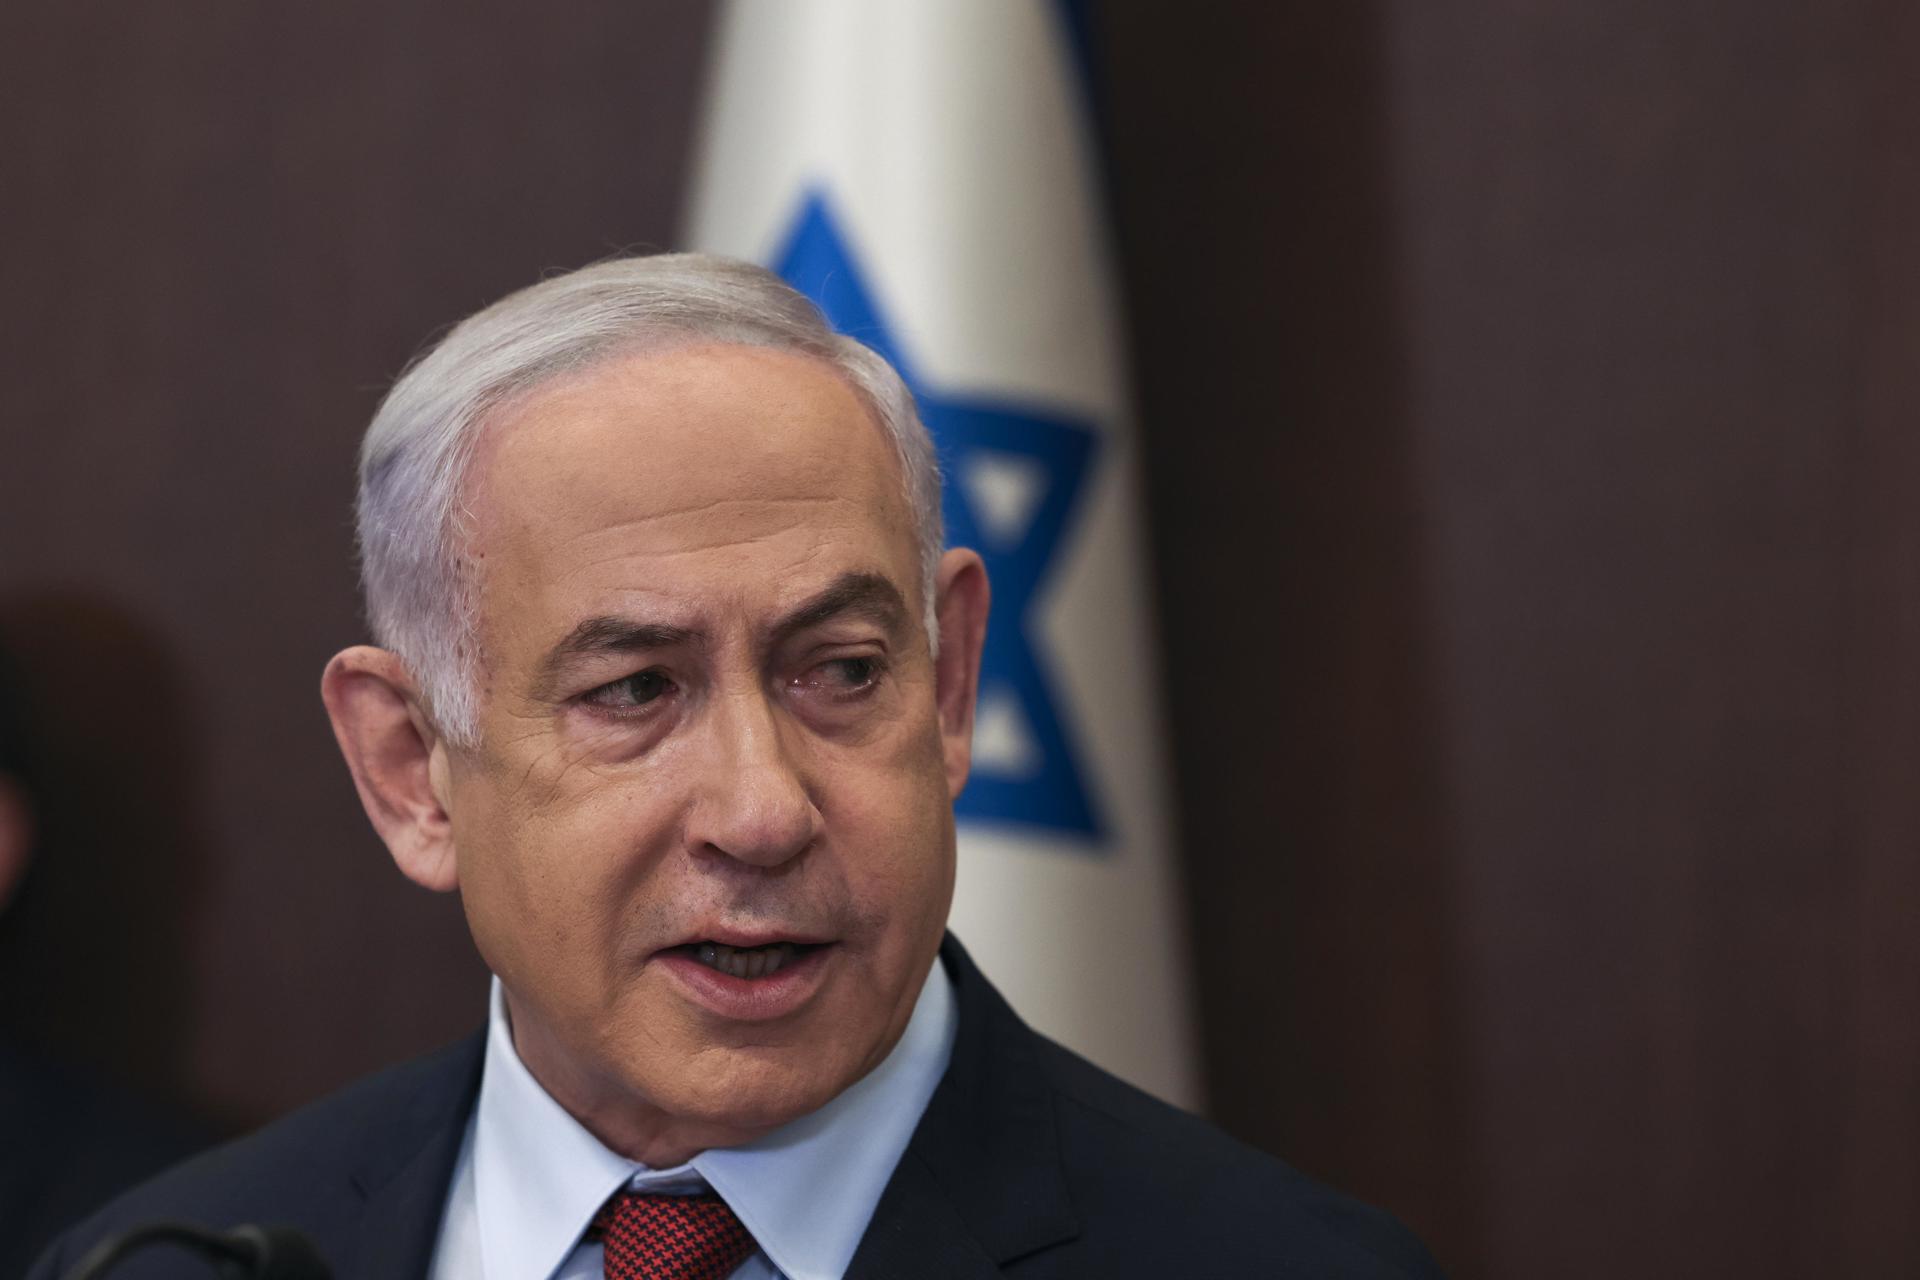 Netanyahu tras fallo de CIJ: Critica “escandalosa acusación” y reitera que “la guerra es contra Hamás y no contra civiles palestinos”